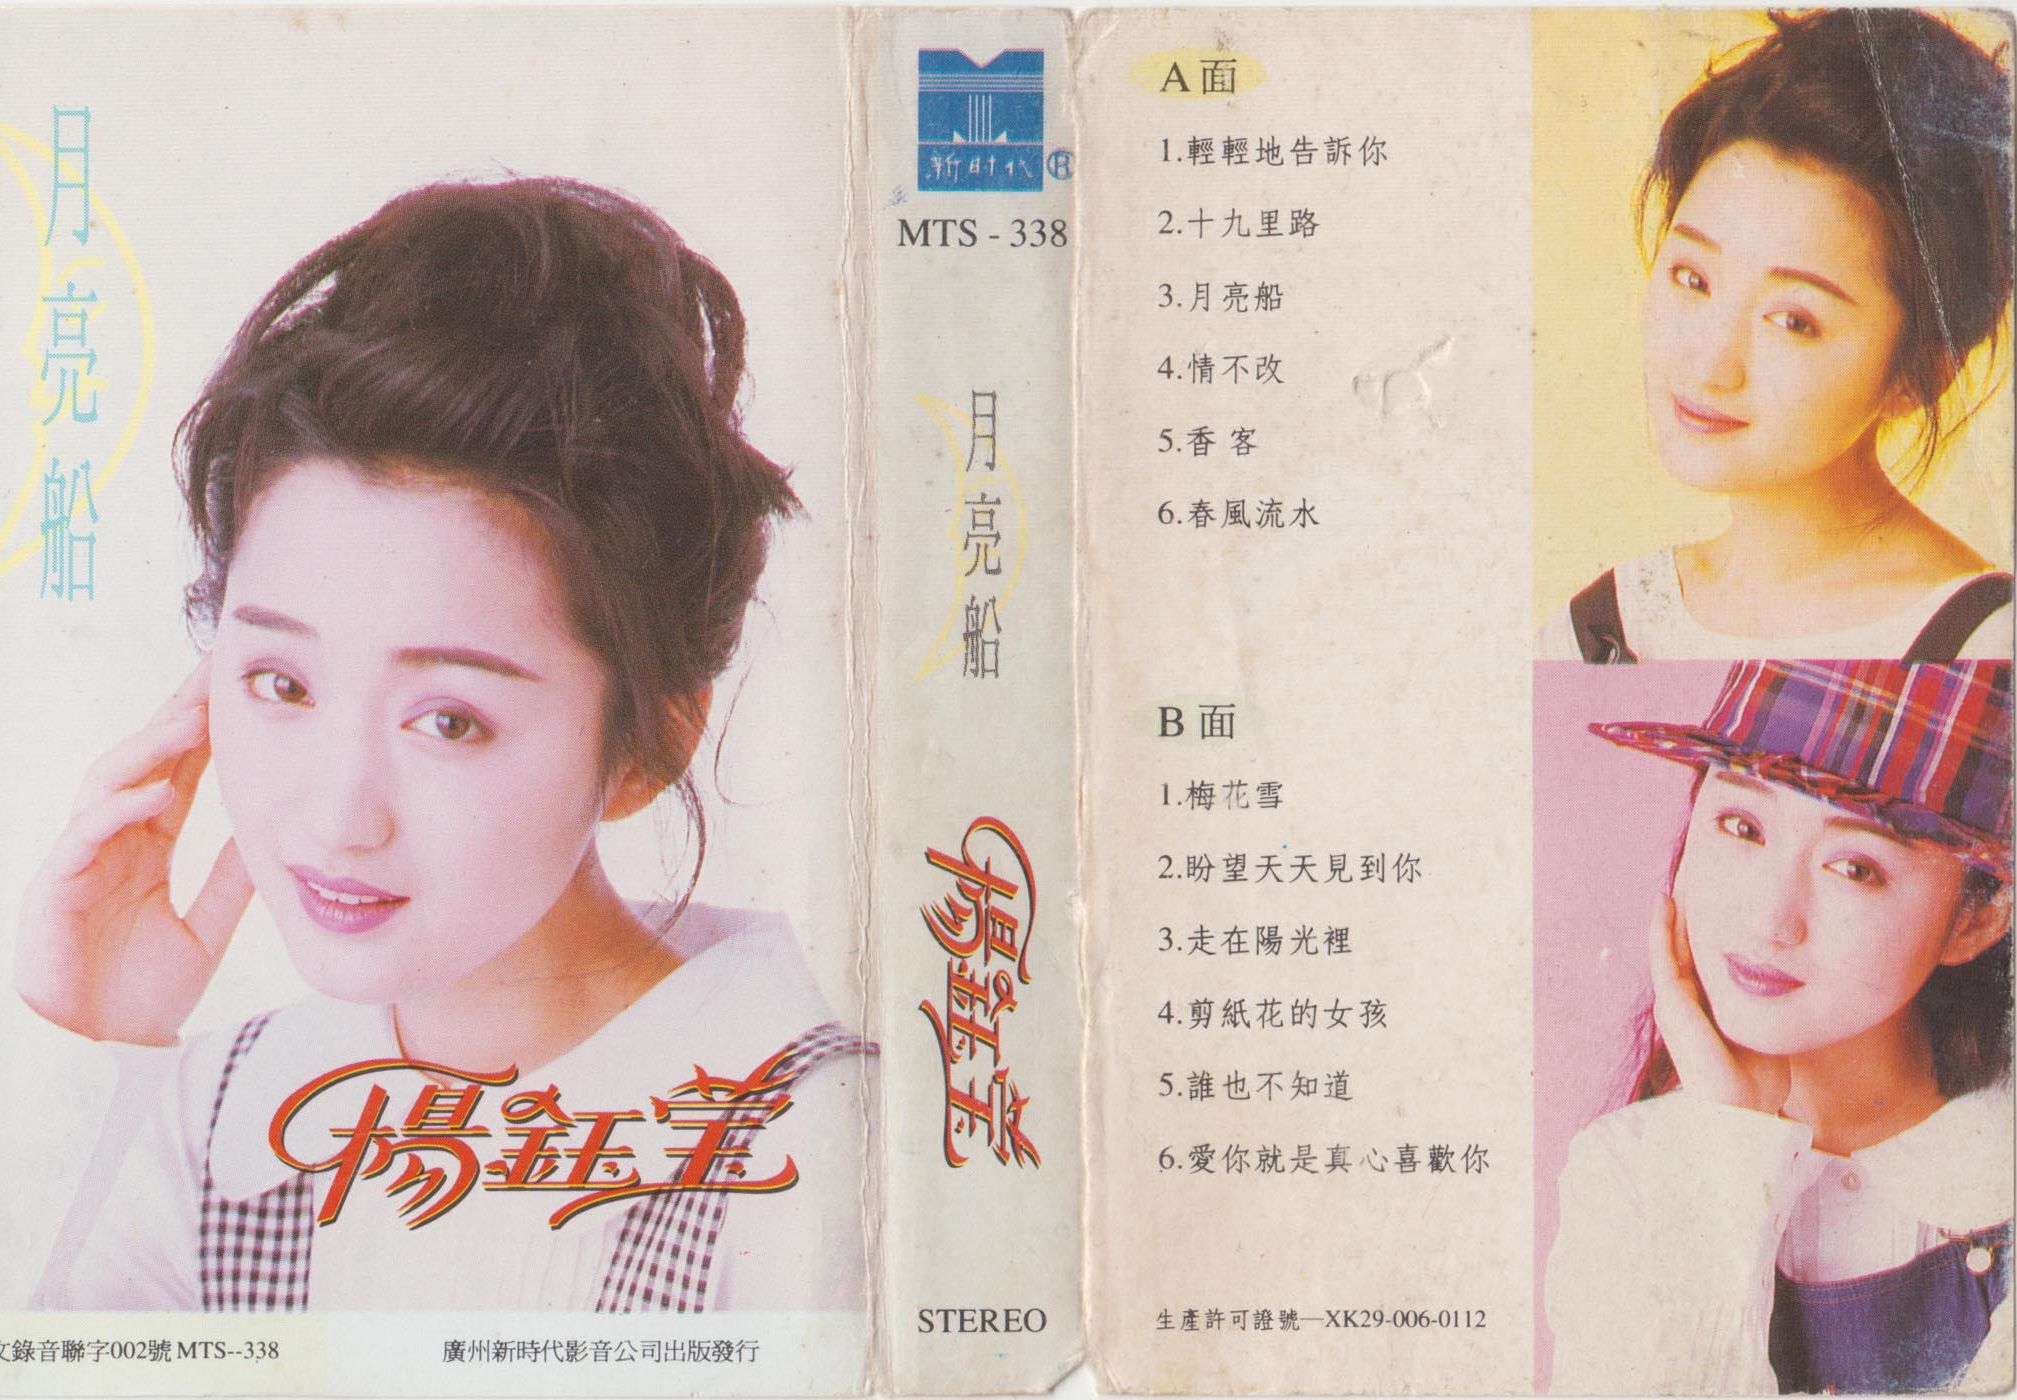 磁带hires:1993 杨 钰莹 《月亮船》广州新时代